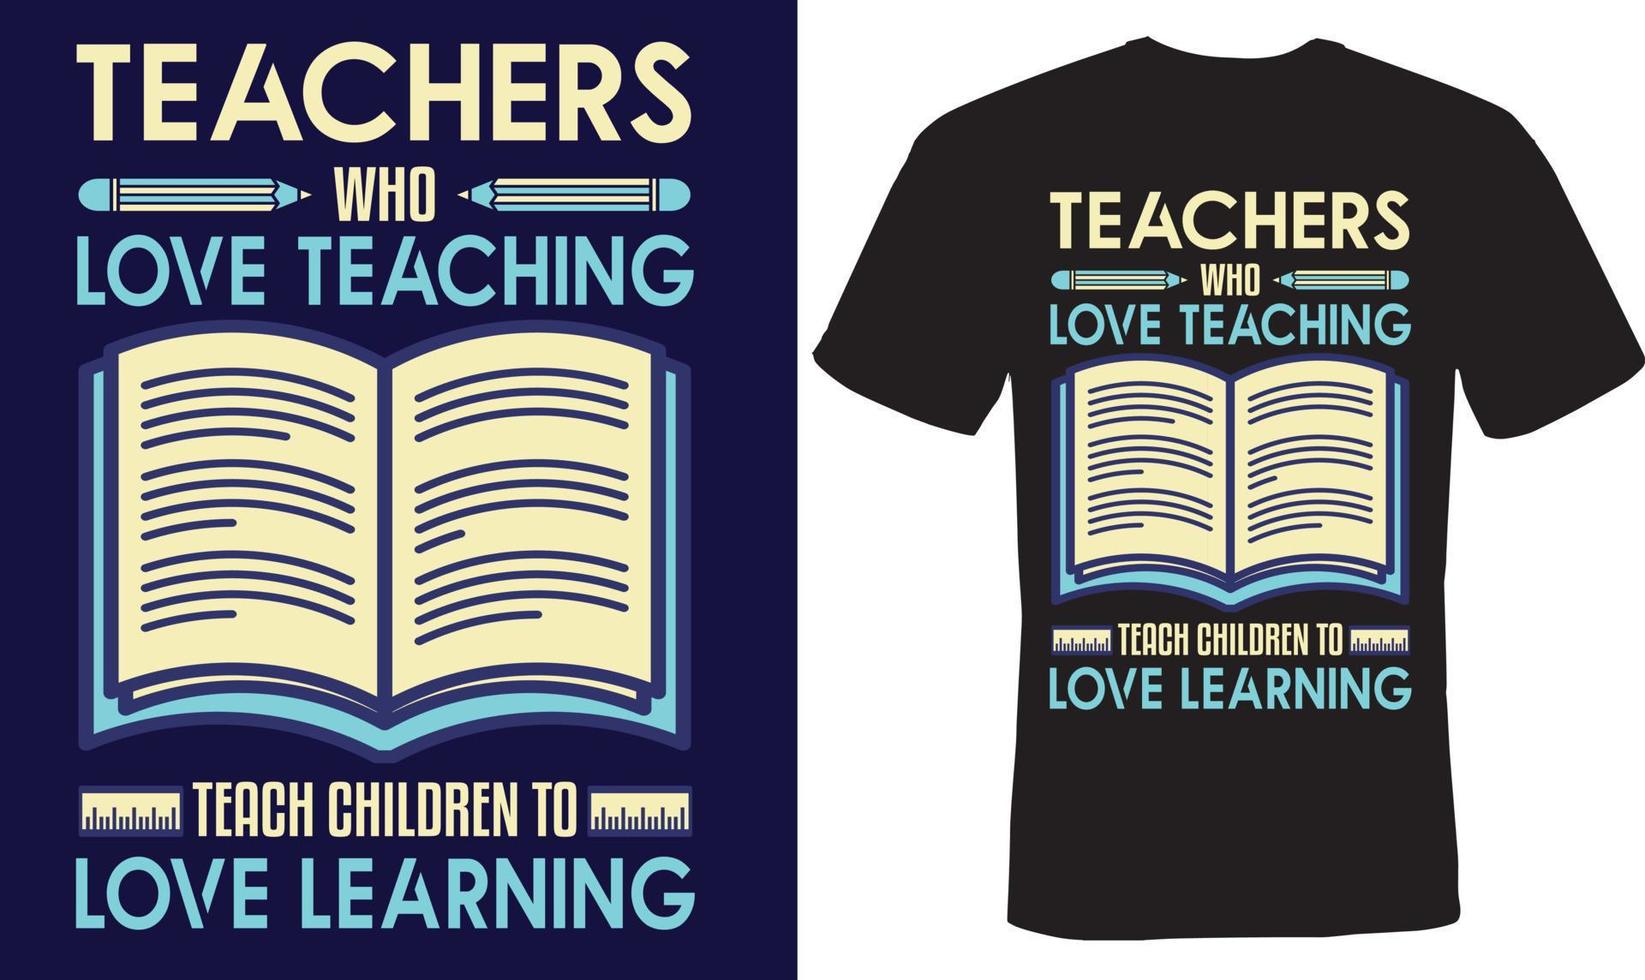 les enseignants qui aiment enseigner enseignent aux enfants à aimer apprendre la conception de t-shirts pour les enseignants vecteur